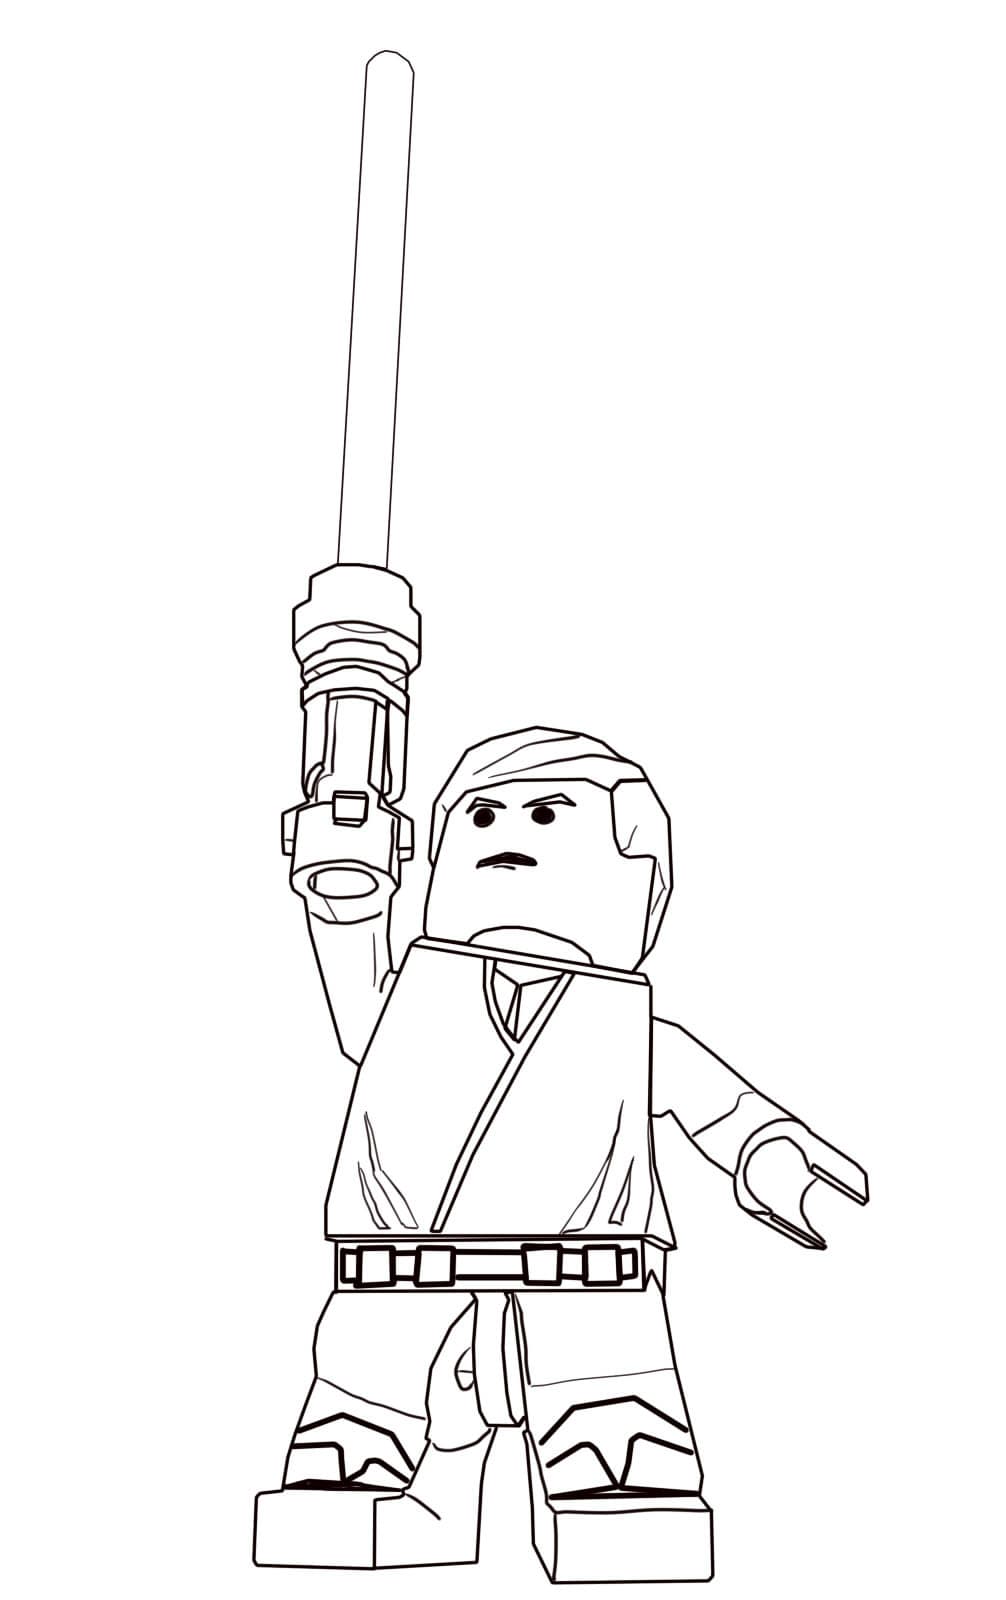 Лего человек поднял меч раскраска